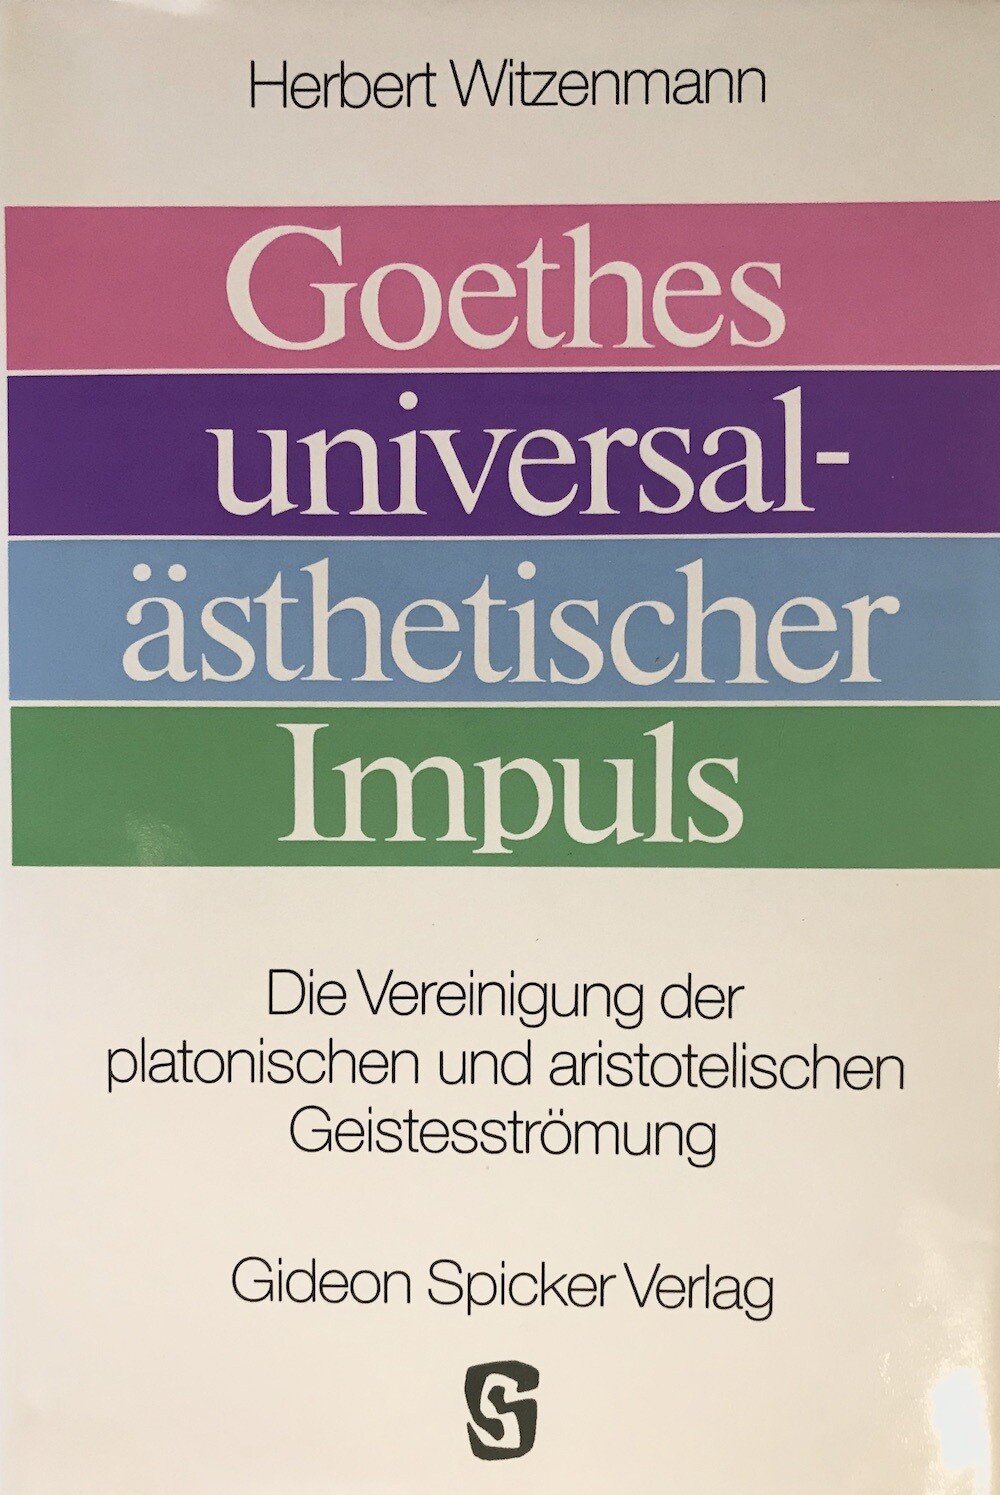 Herbert Witzenmann: Goethes universalästhetischer Impuls - Die Vereinigung der platonischen und aristotelischen Geistesströmung